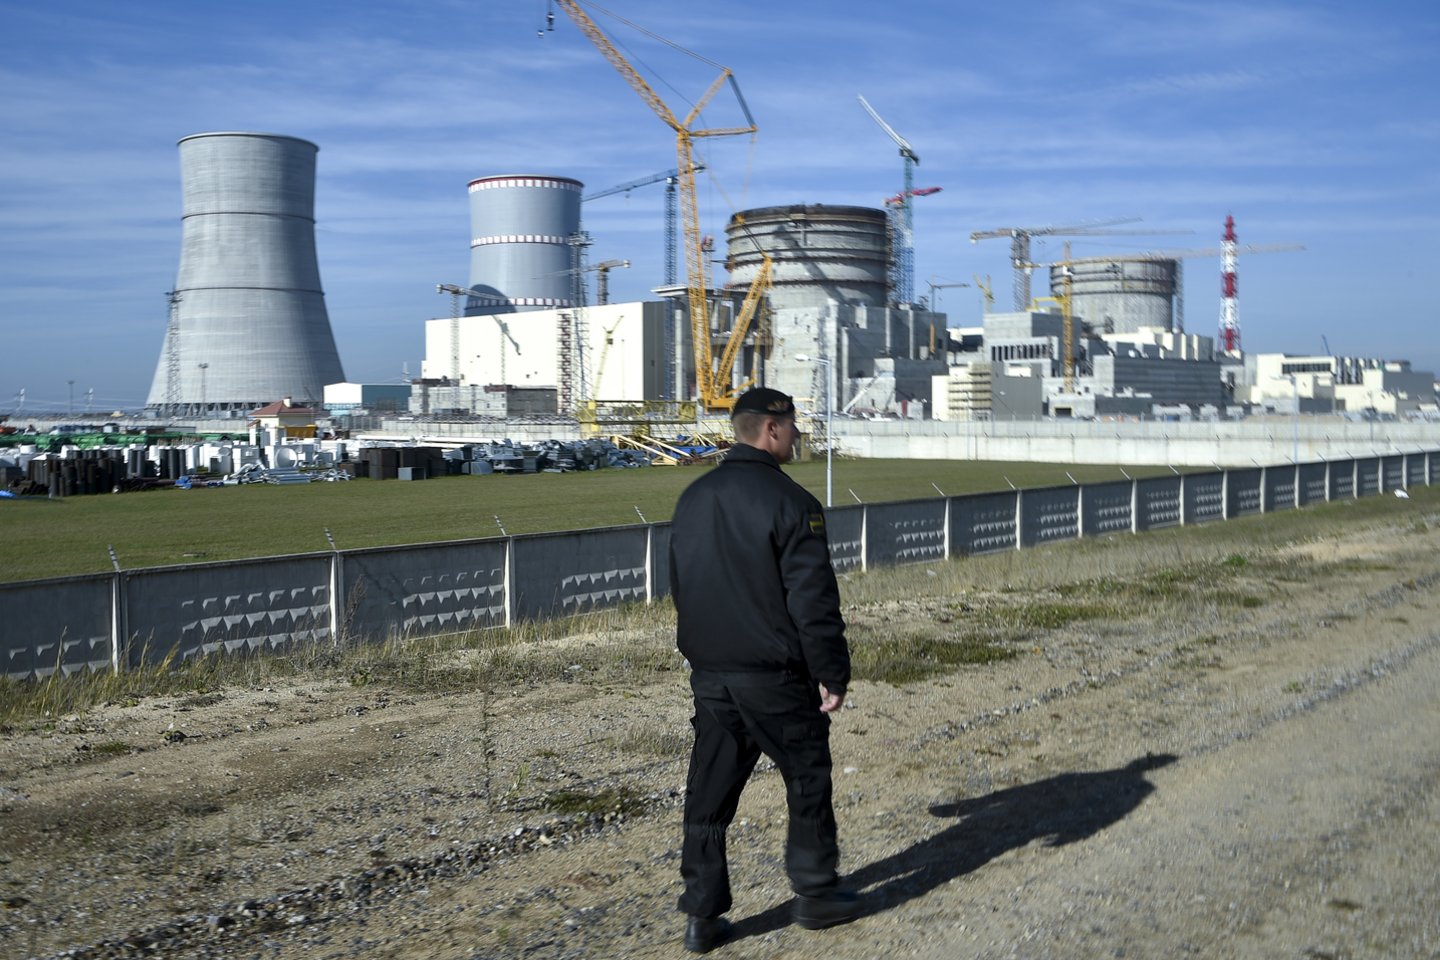 Astravo AE pirmasis energijos blokas po beveik trijų mėnesių pertraukos vėl įjungtas į šalies energetikos sistemą pramoninei elektros gamybai.<br>V.Ščiavinsko nuotr.